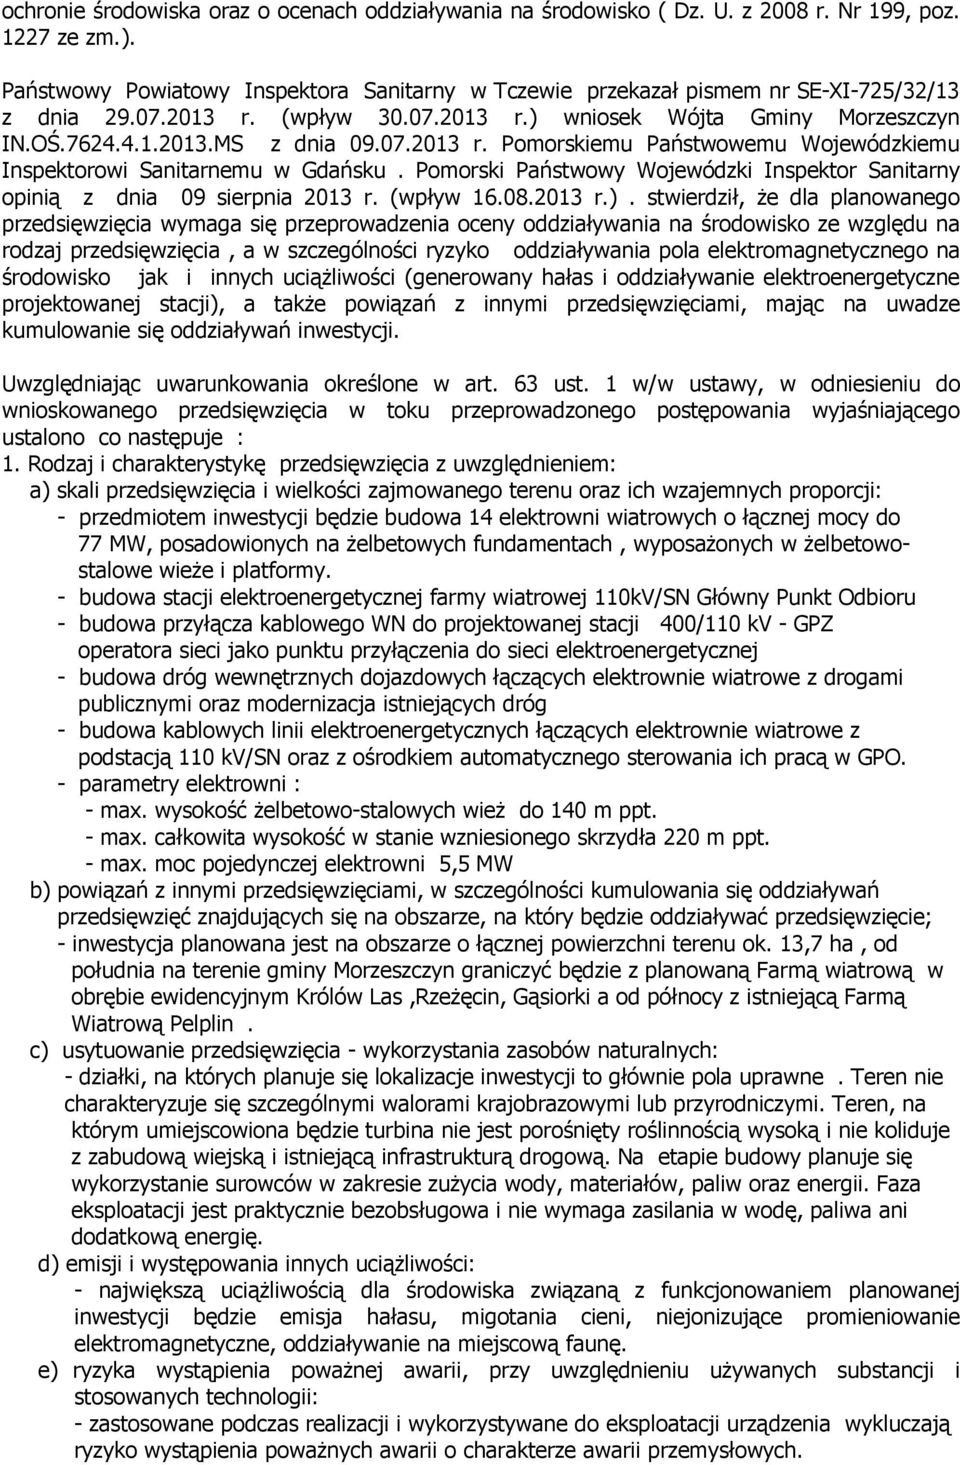 Pomorski Państwowy Wojewódzki Inspektor Sanitarny opinią z dnia 09 sierpnia 2013 r. (wpływ 16.08.2013 r.).